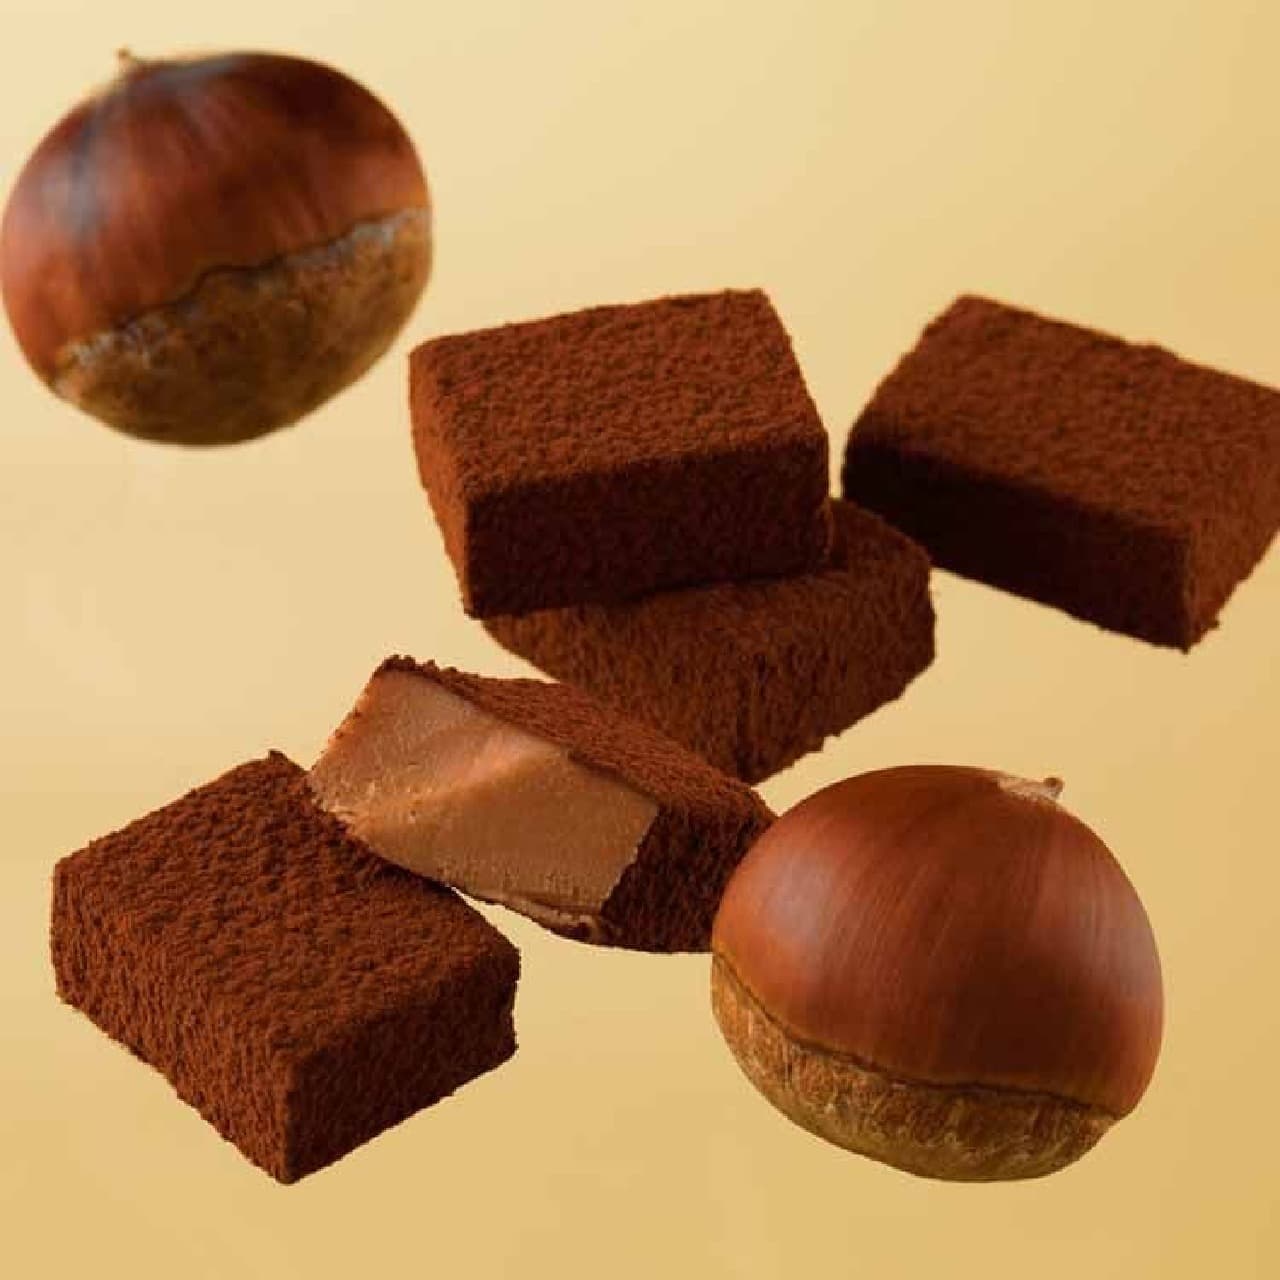 Lloyds "Fresh Chocolate [Chestnut]".